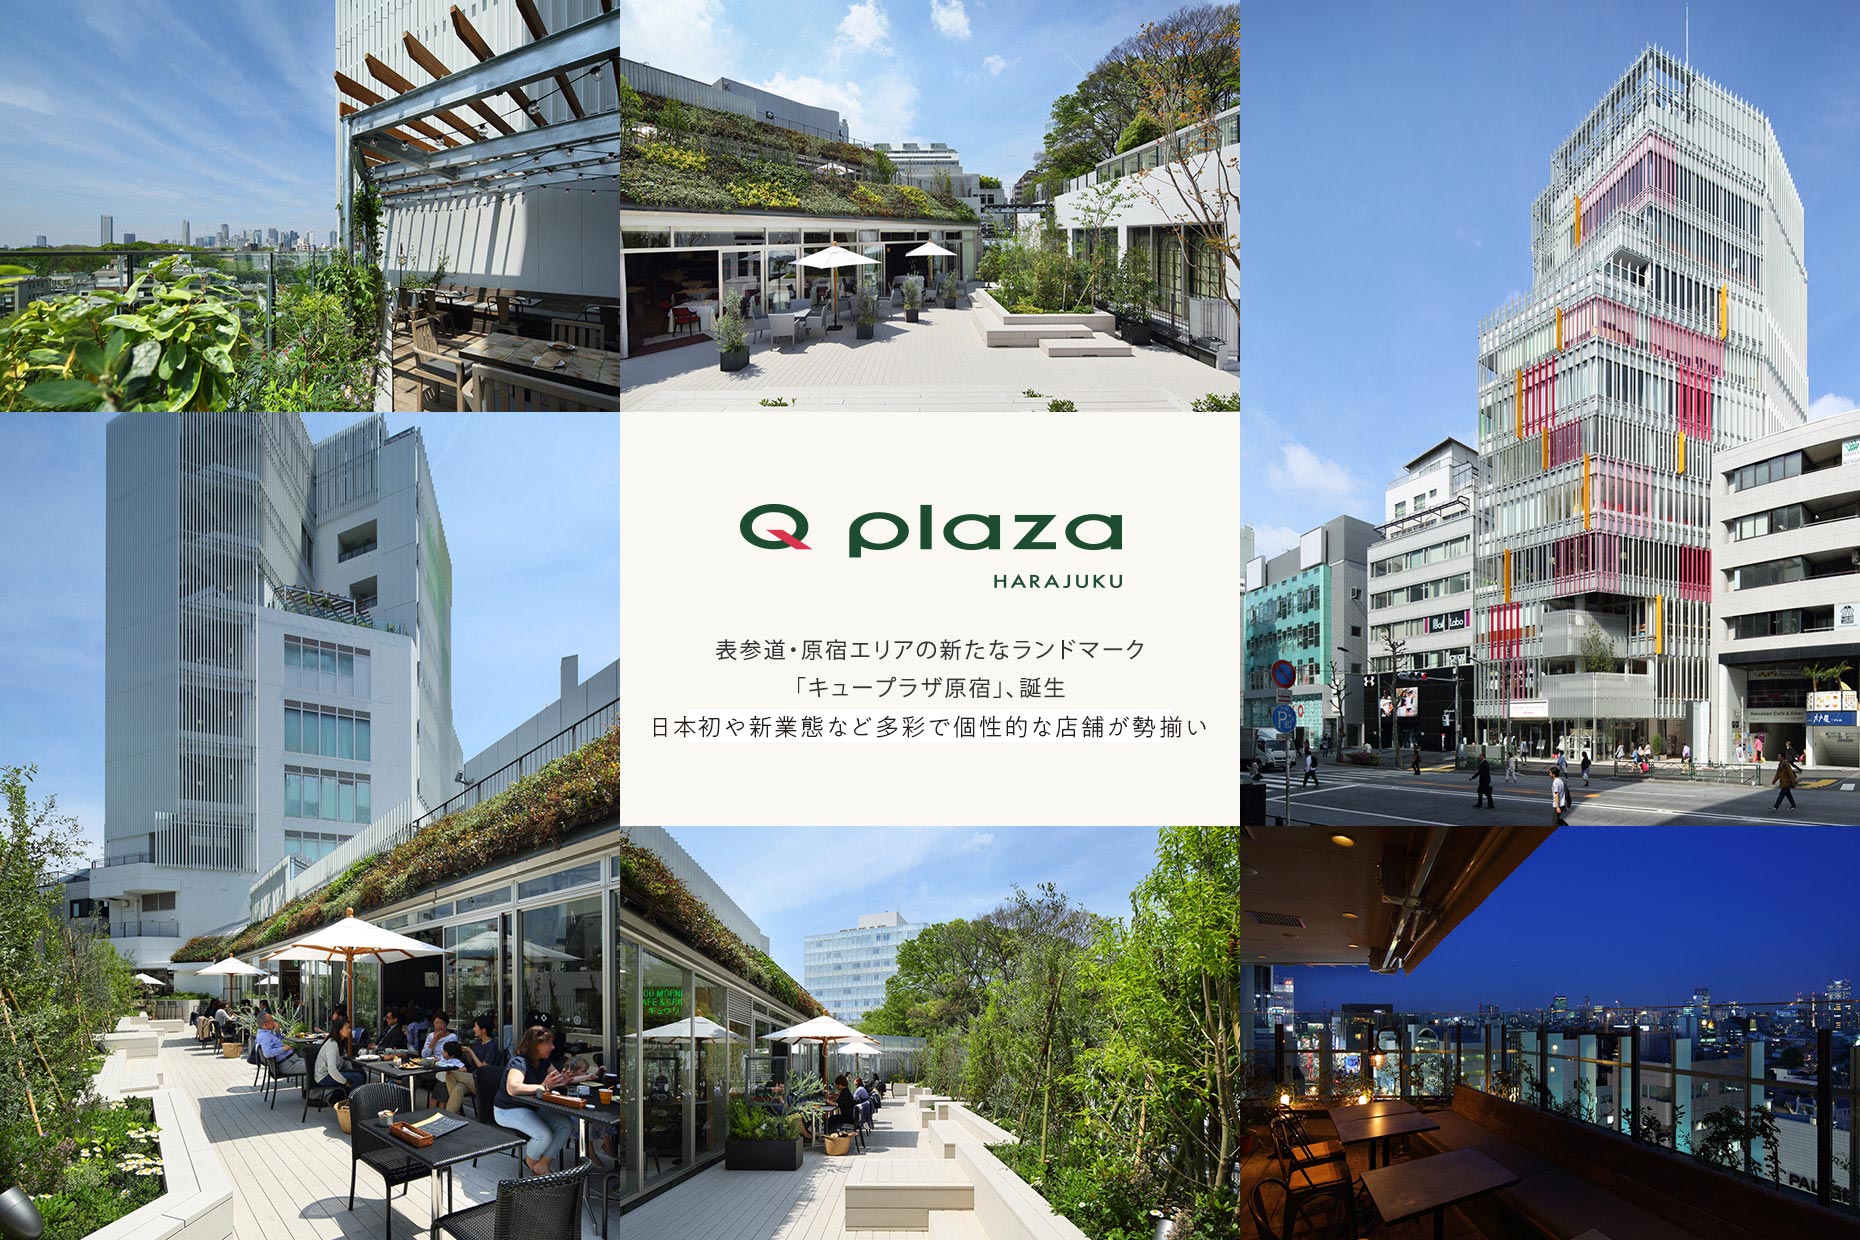 2015年3月27日OPEN! Q PLAZA HARAJUKU 日本初や新業態など多彩で個性的な店舗が勢揃い。表参道・原宿エリアの新たなランドマーク「キュープラザ原宿」、誕生。